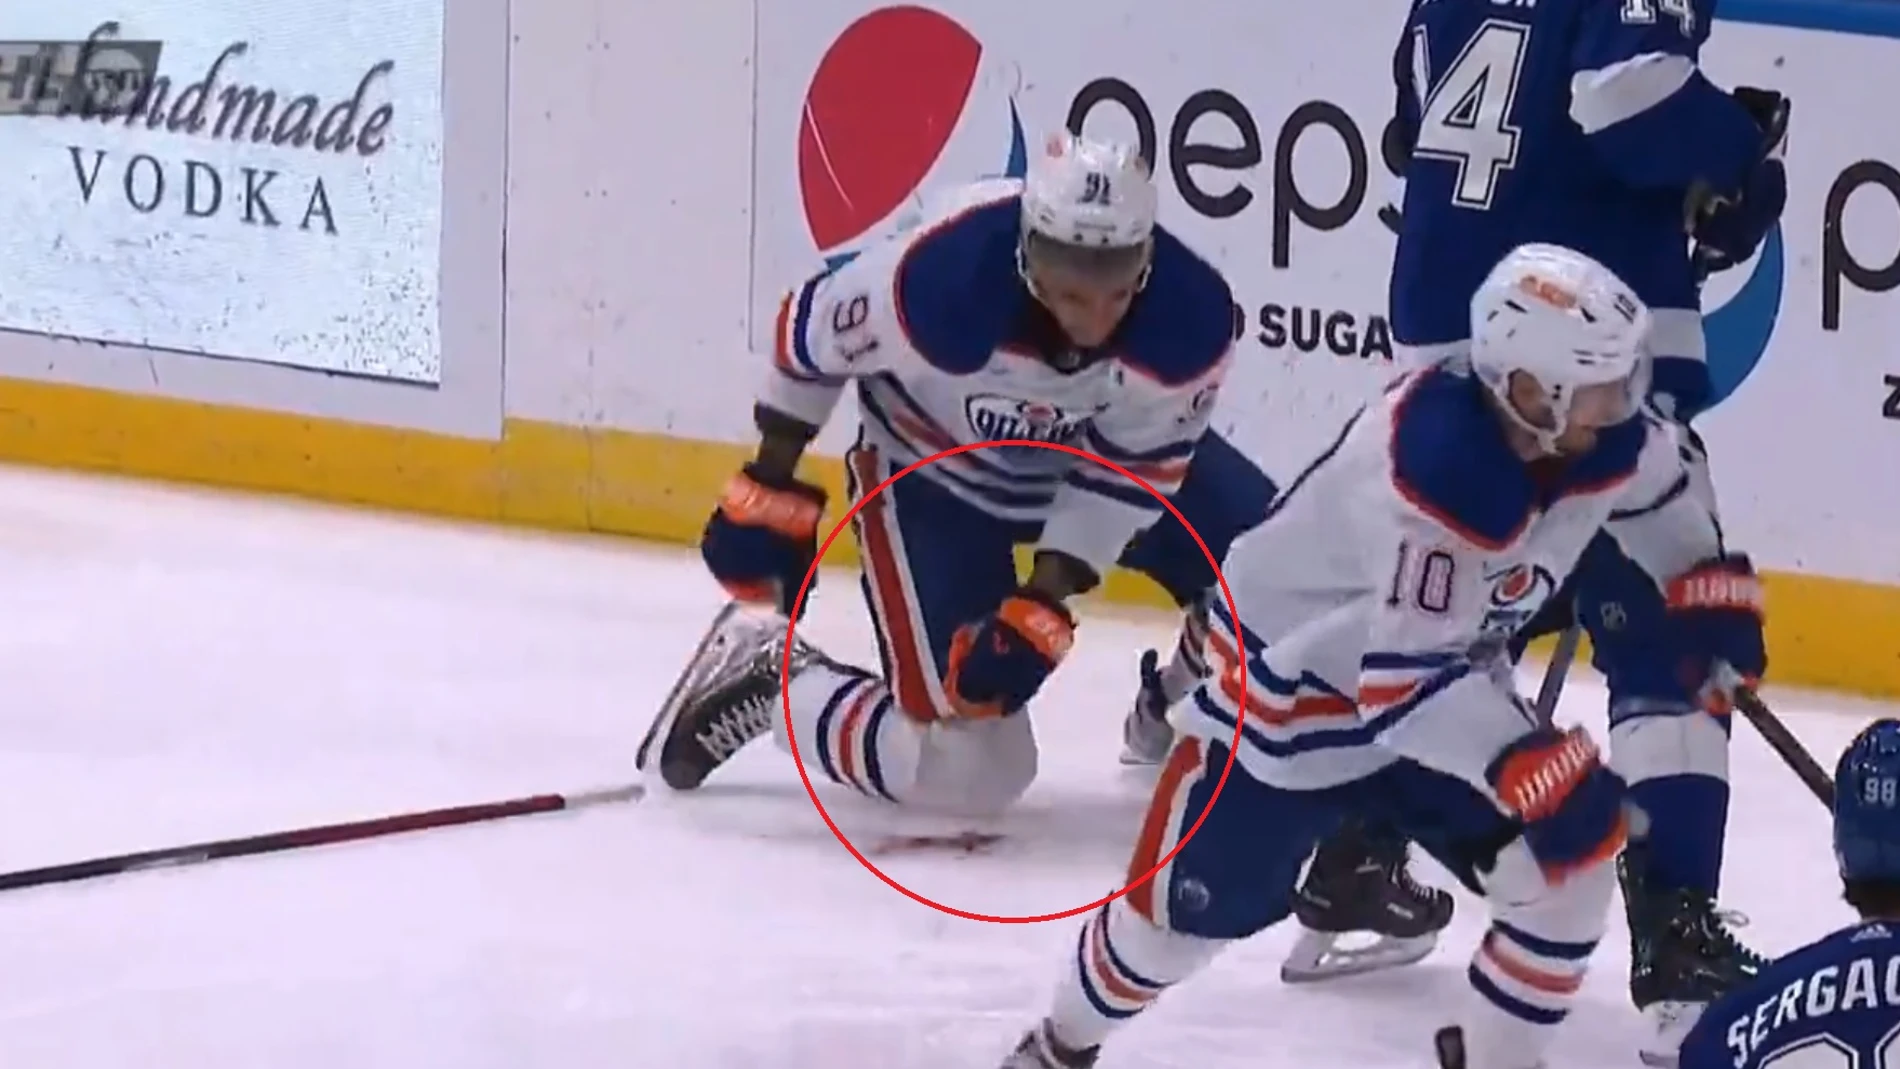 Imagen del momento en el que Evander Kane, jugador de los Edmonton Oilers, sufre un corte en la muñeca